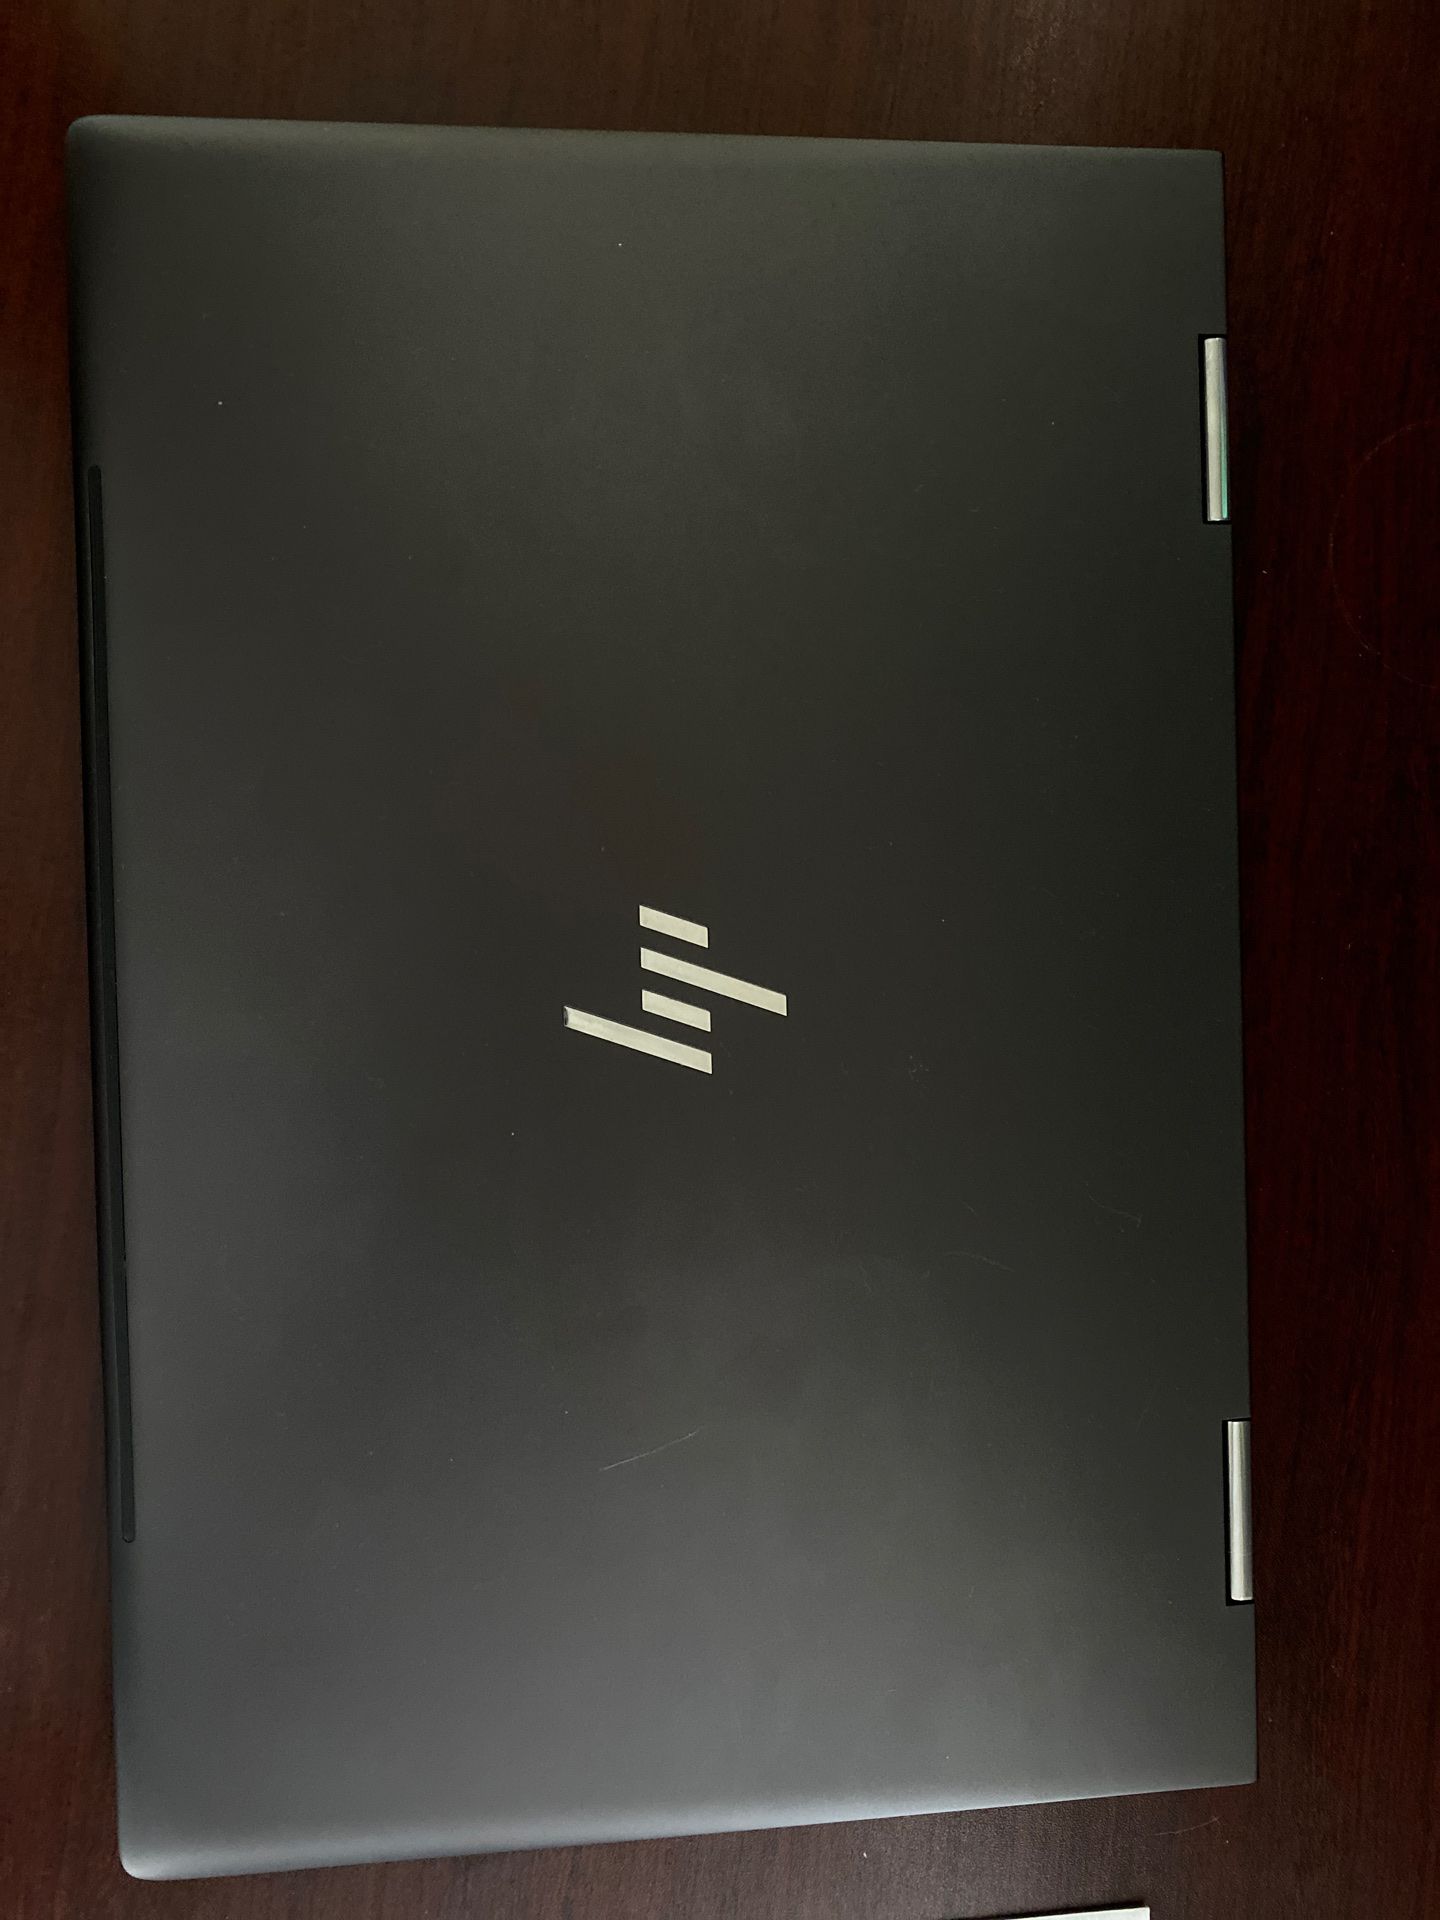 HP ENVY Laptop